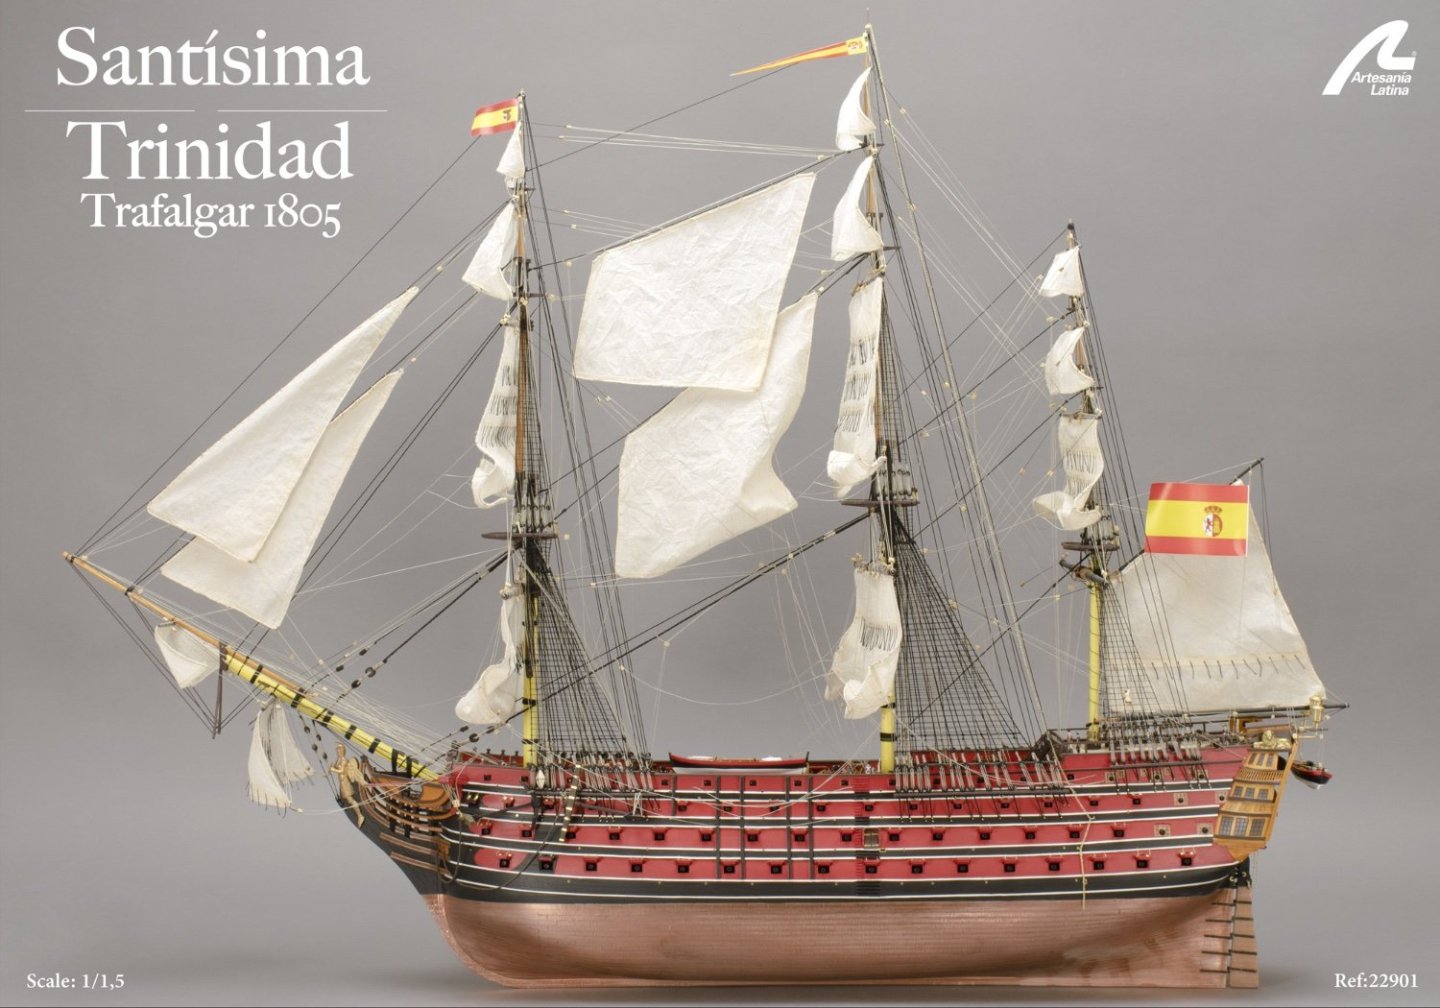 Santisima Trinidad - Trafalgar 1805 - 1/84 - Artesania Latina ref